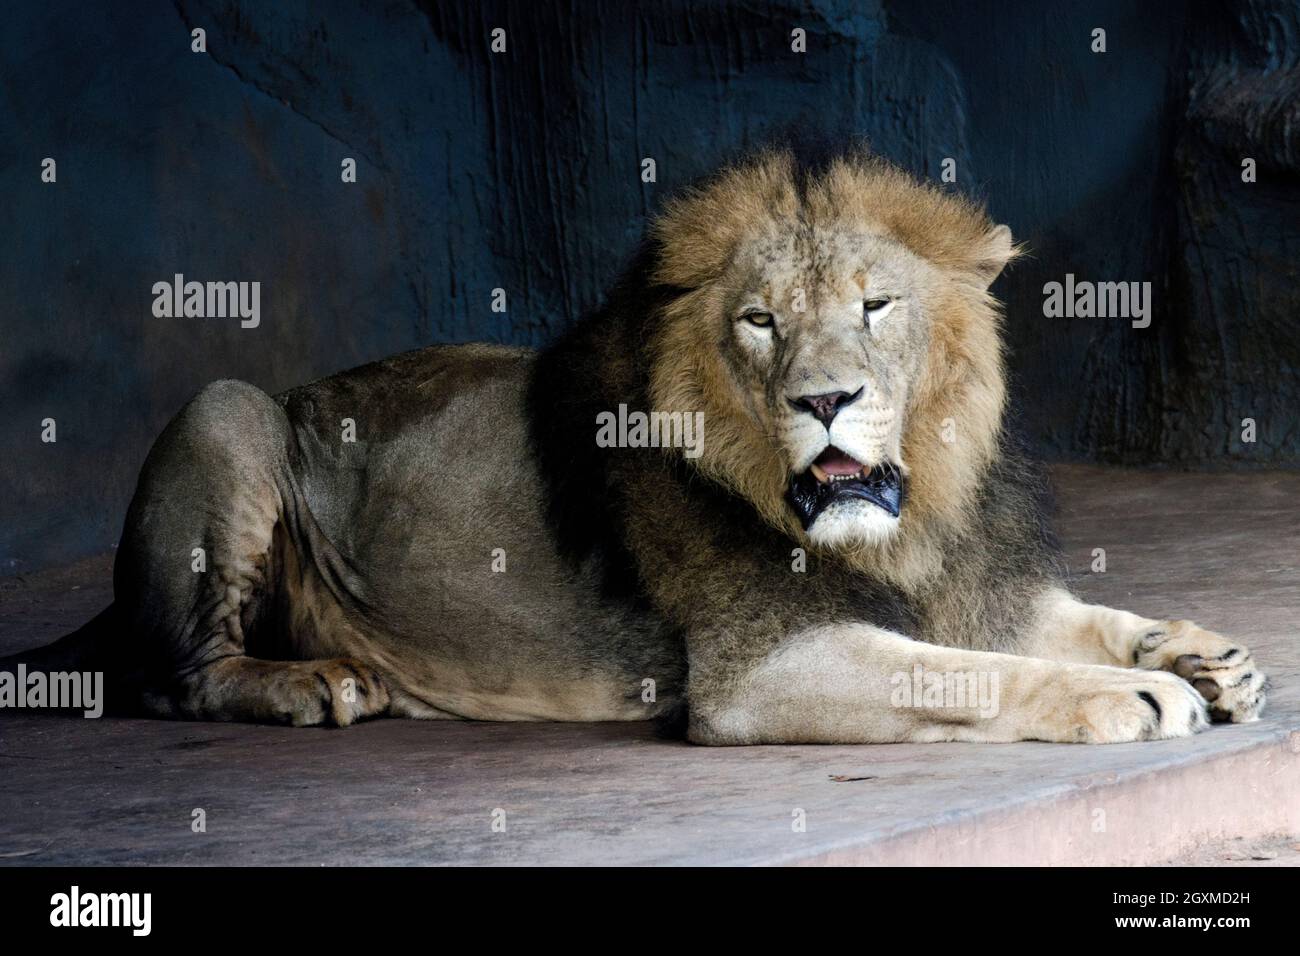 Roi de la jungle, roars à lion aux jardins zoologiques Banque D'Images